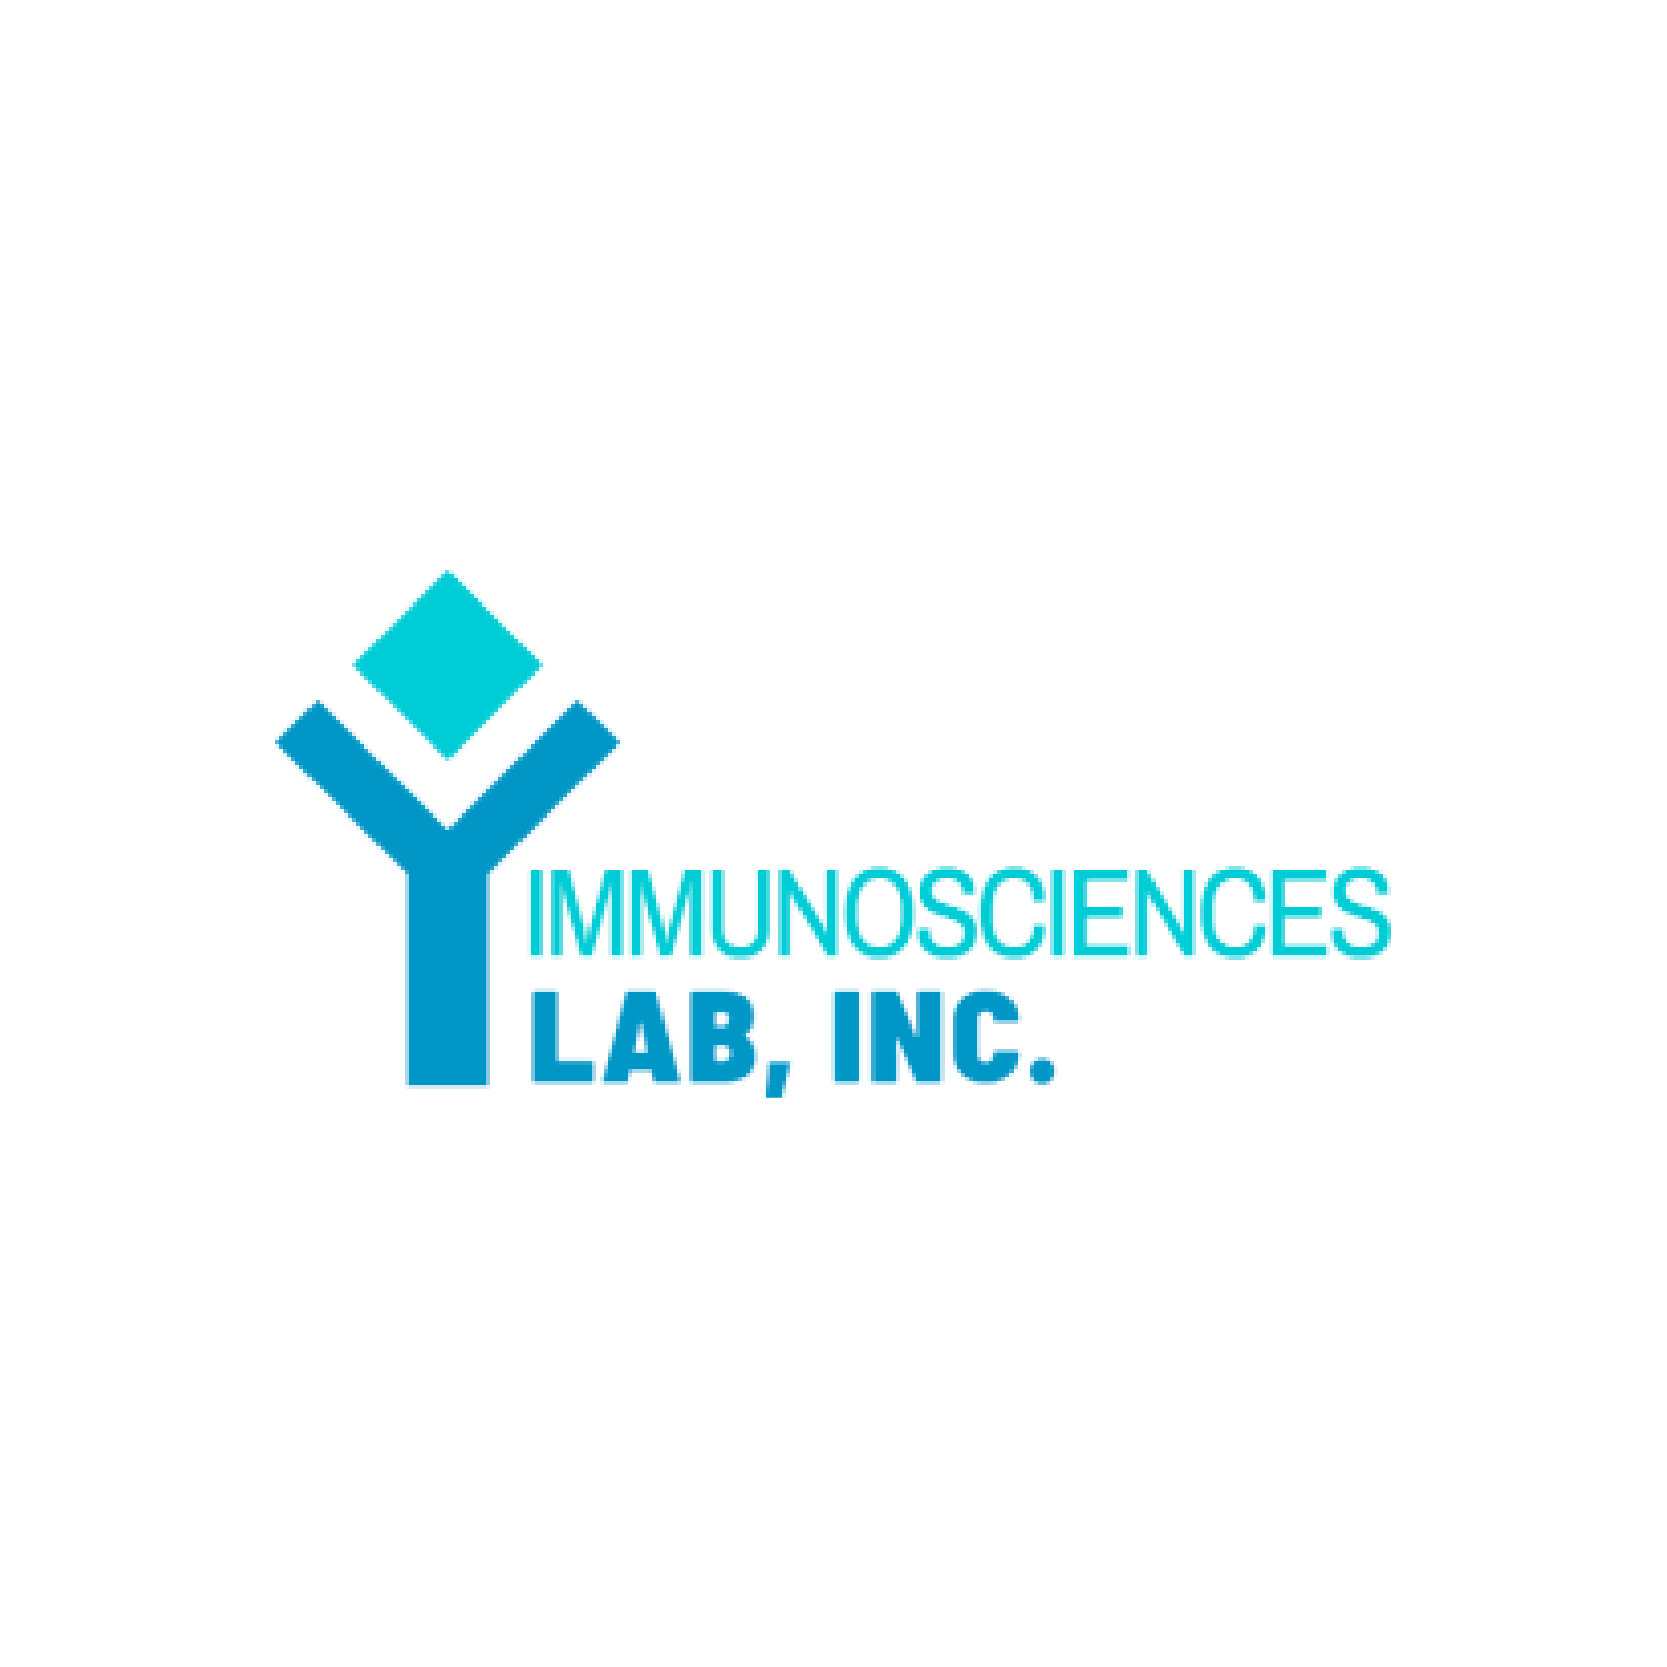 Immunosciences Lab